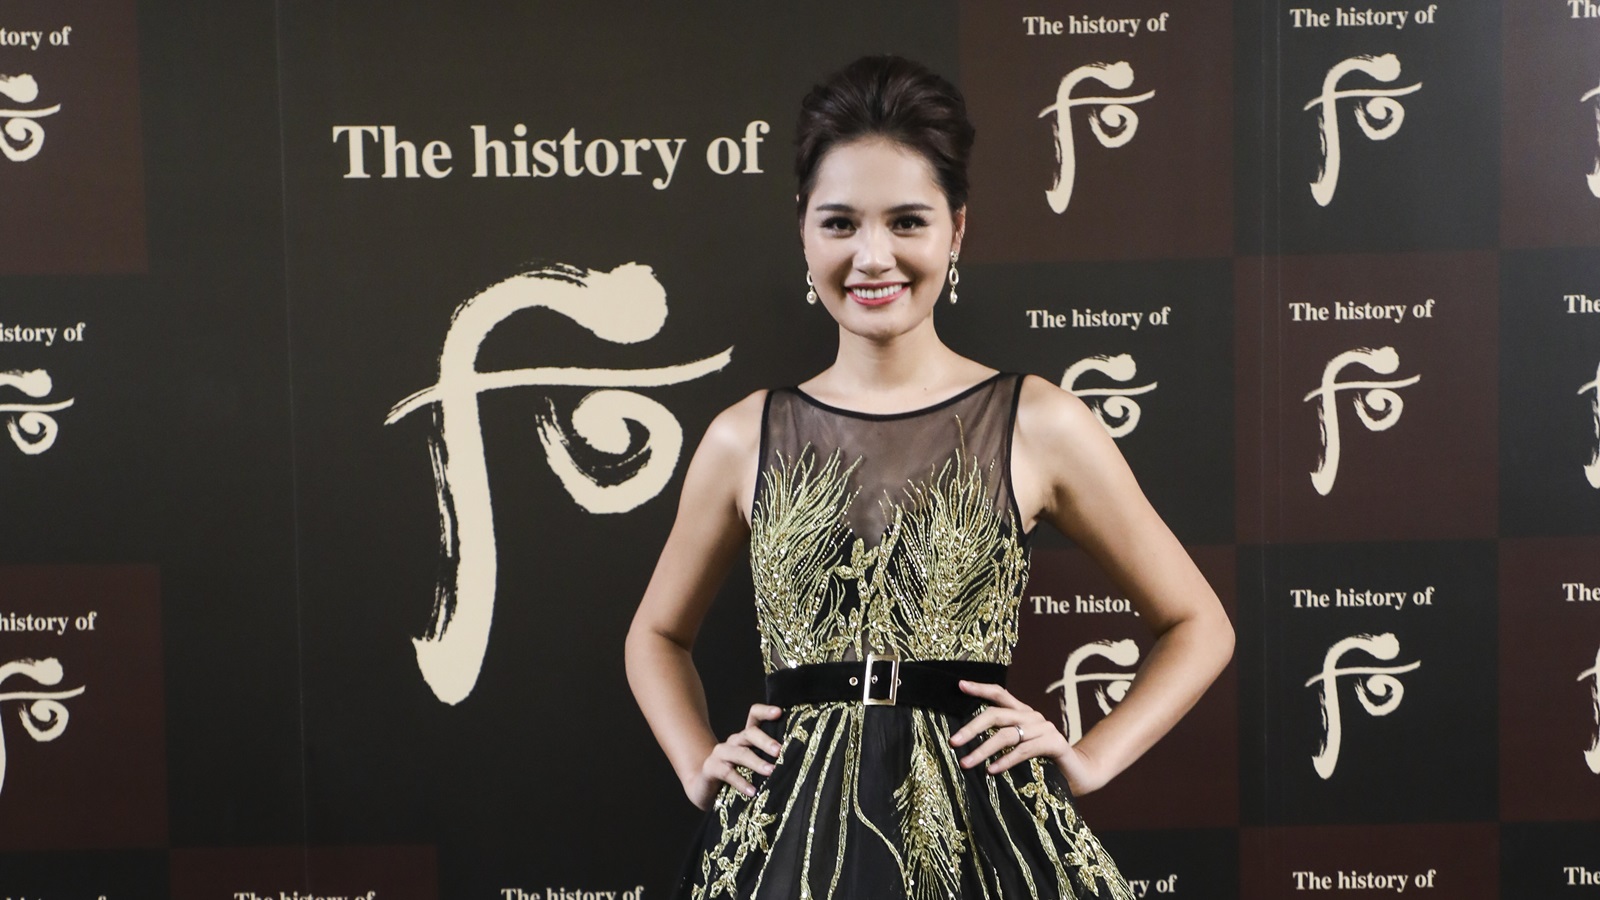 Hoa hậu Hương Giang hội ngộ Trương Tử Lâm tại yến tiệc cung đình của mỹ phẩm The History of Whoo